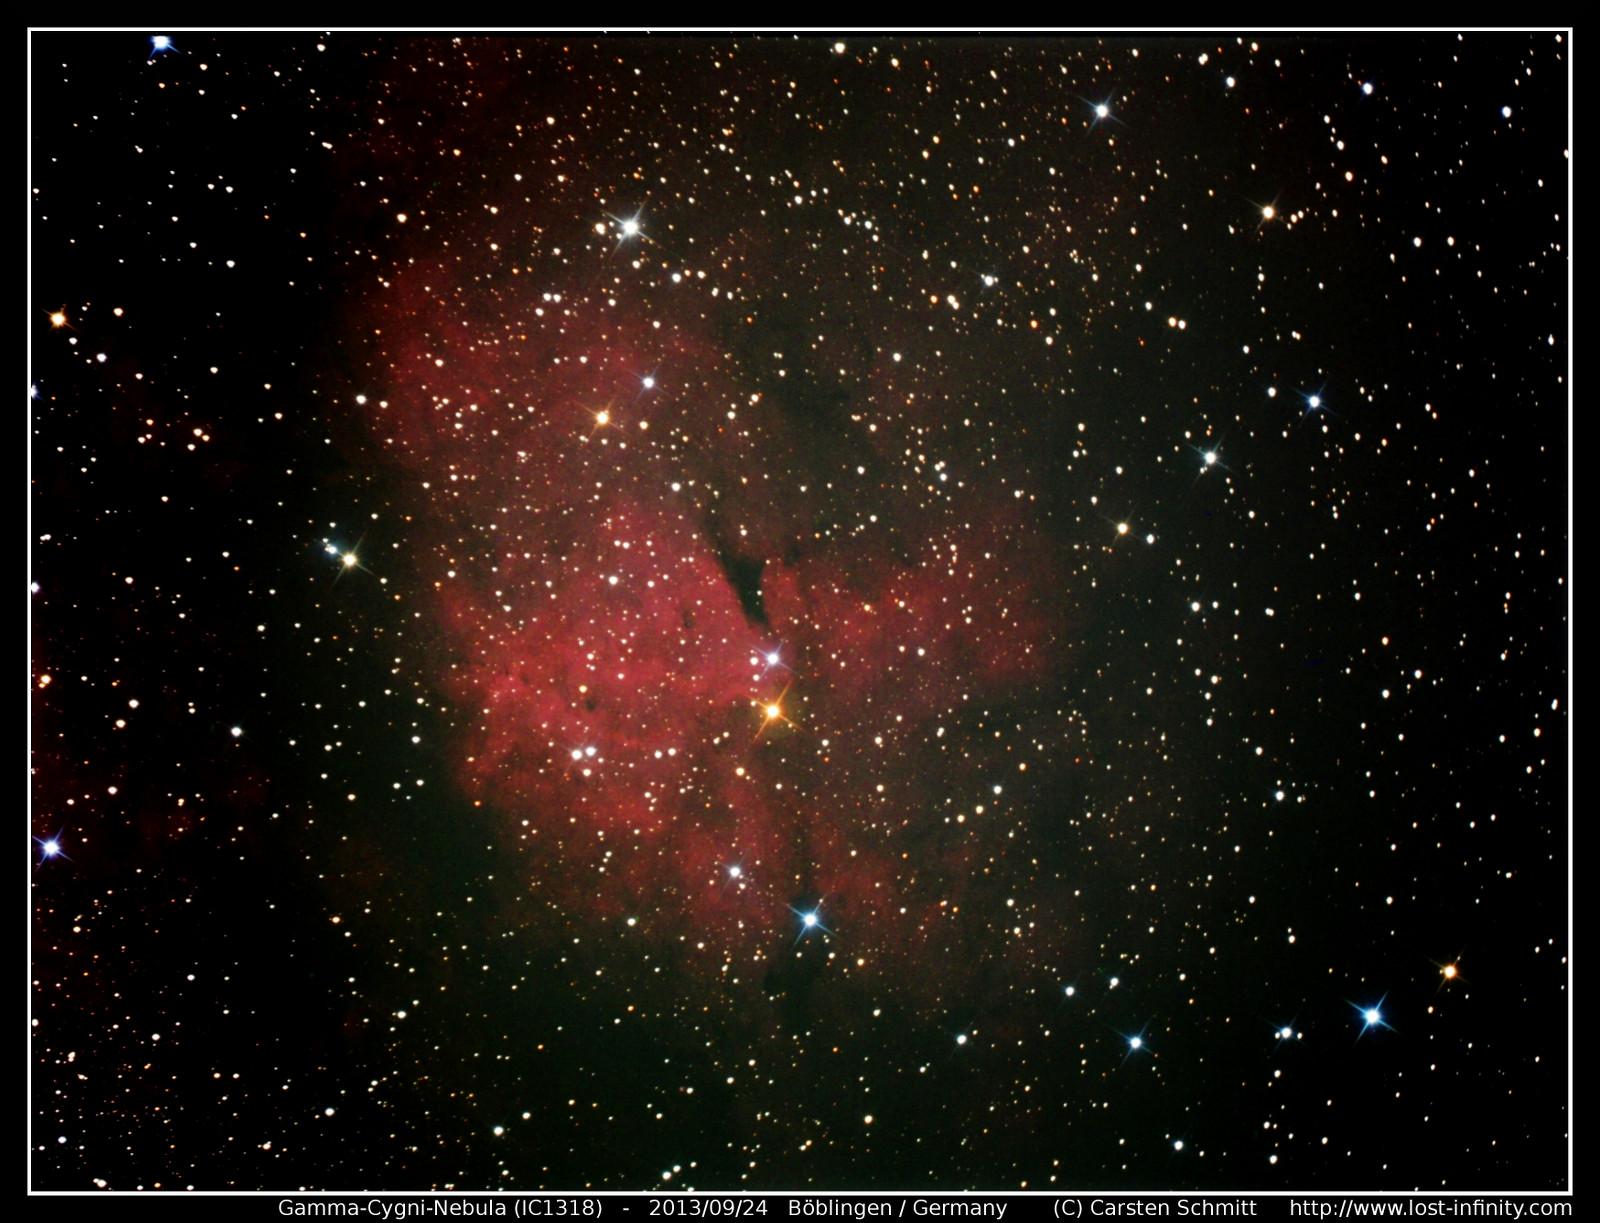 Gamma-Cygni-Nebula (IC1318) - Part 2 - 2013/09/24